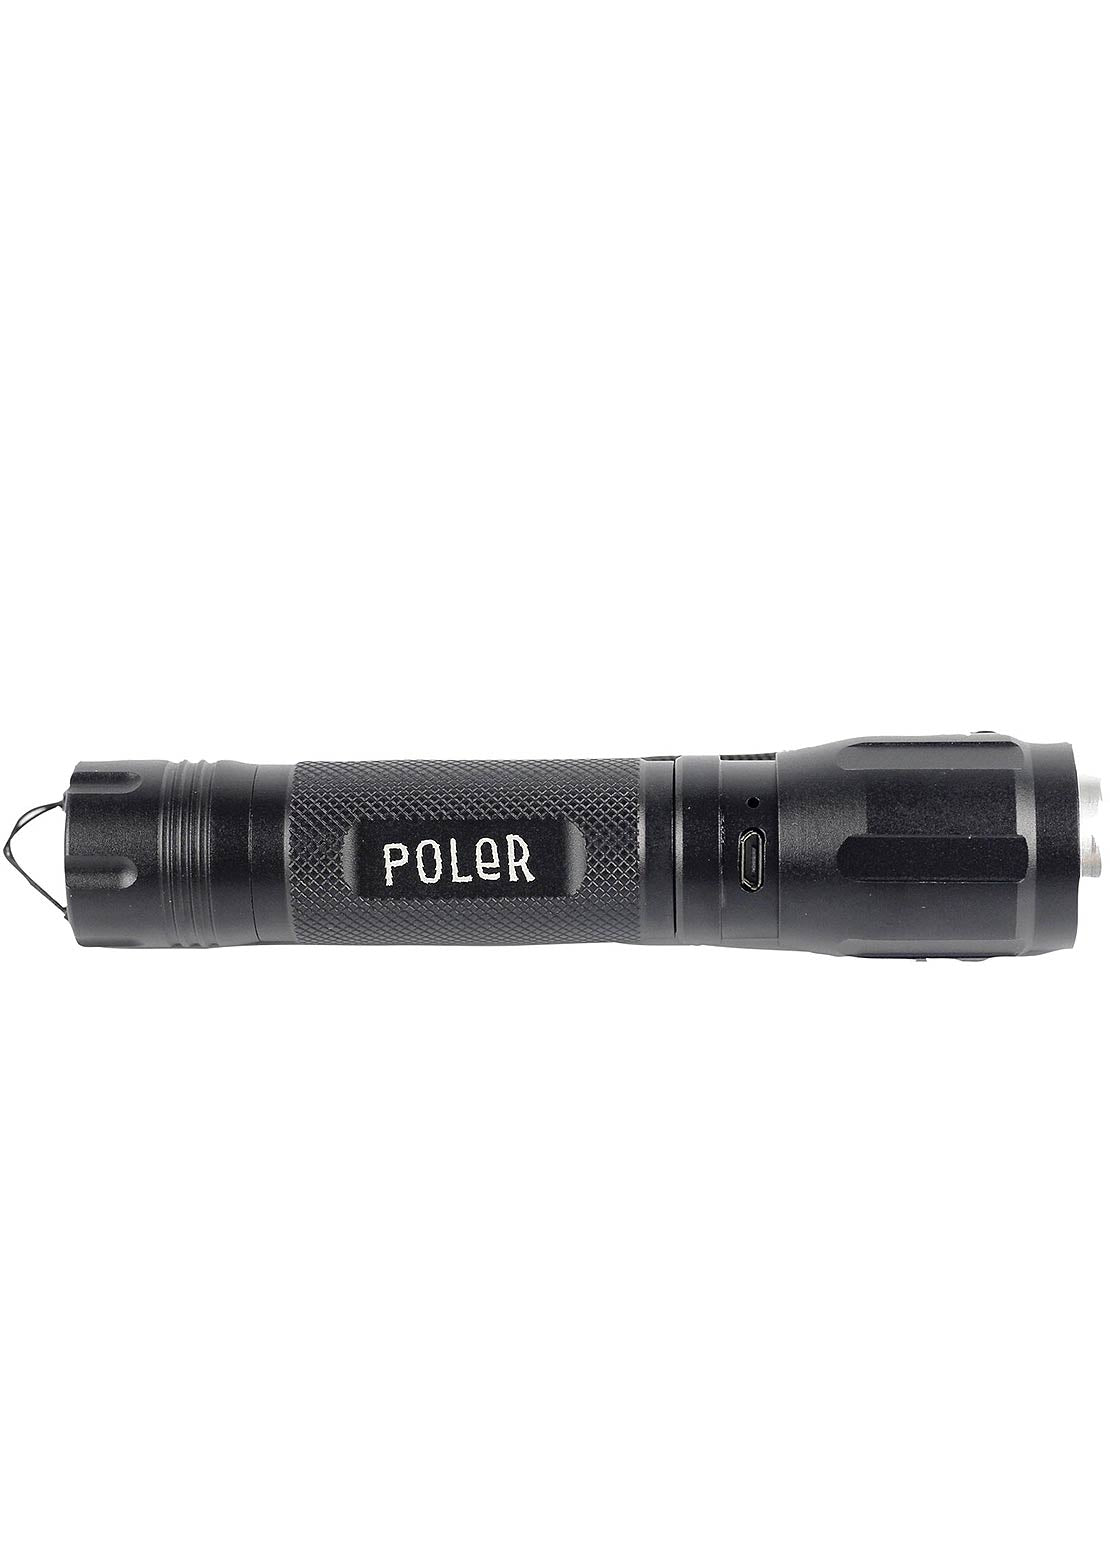 Poler Flashlight Black